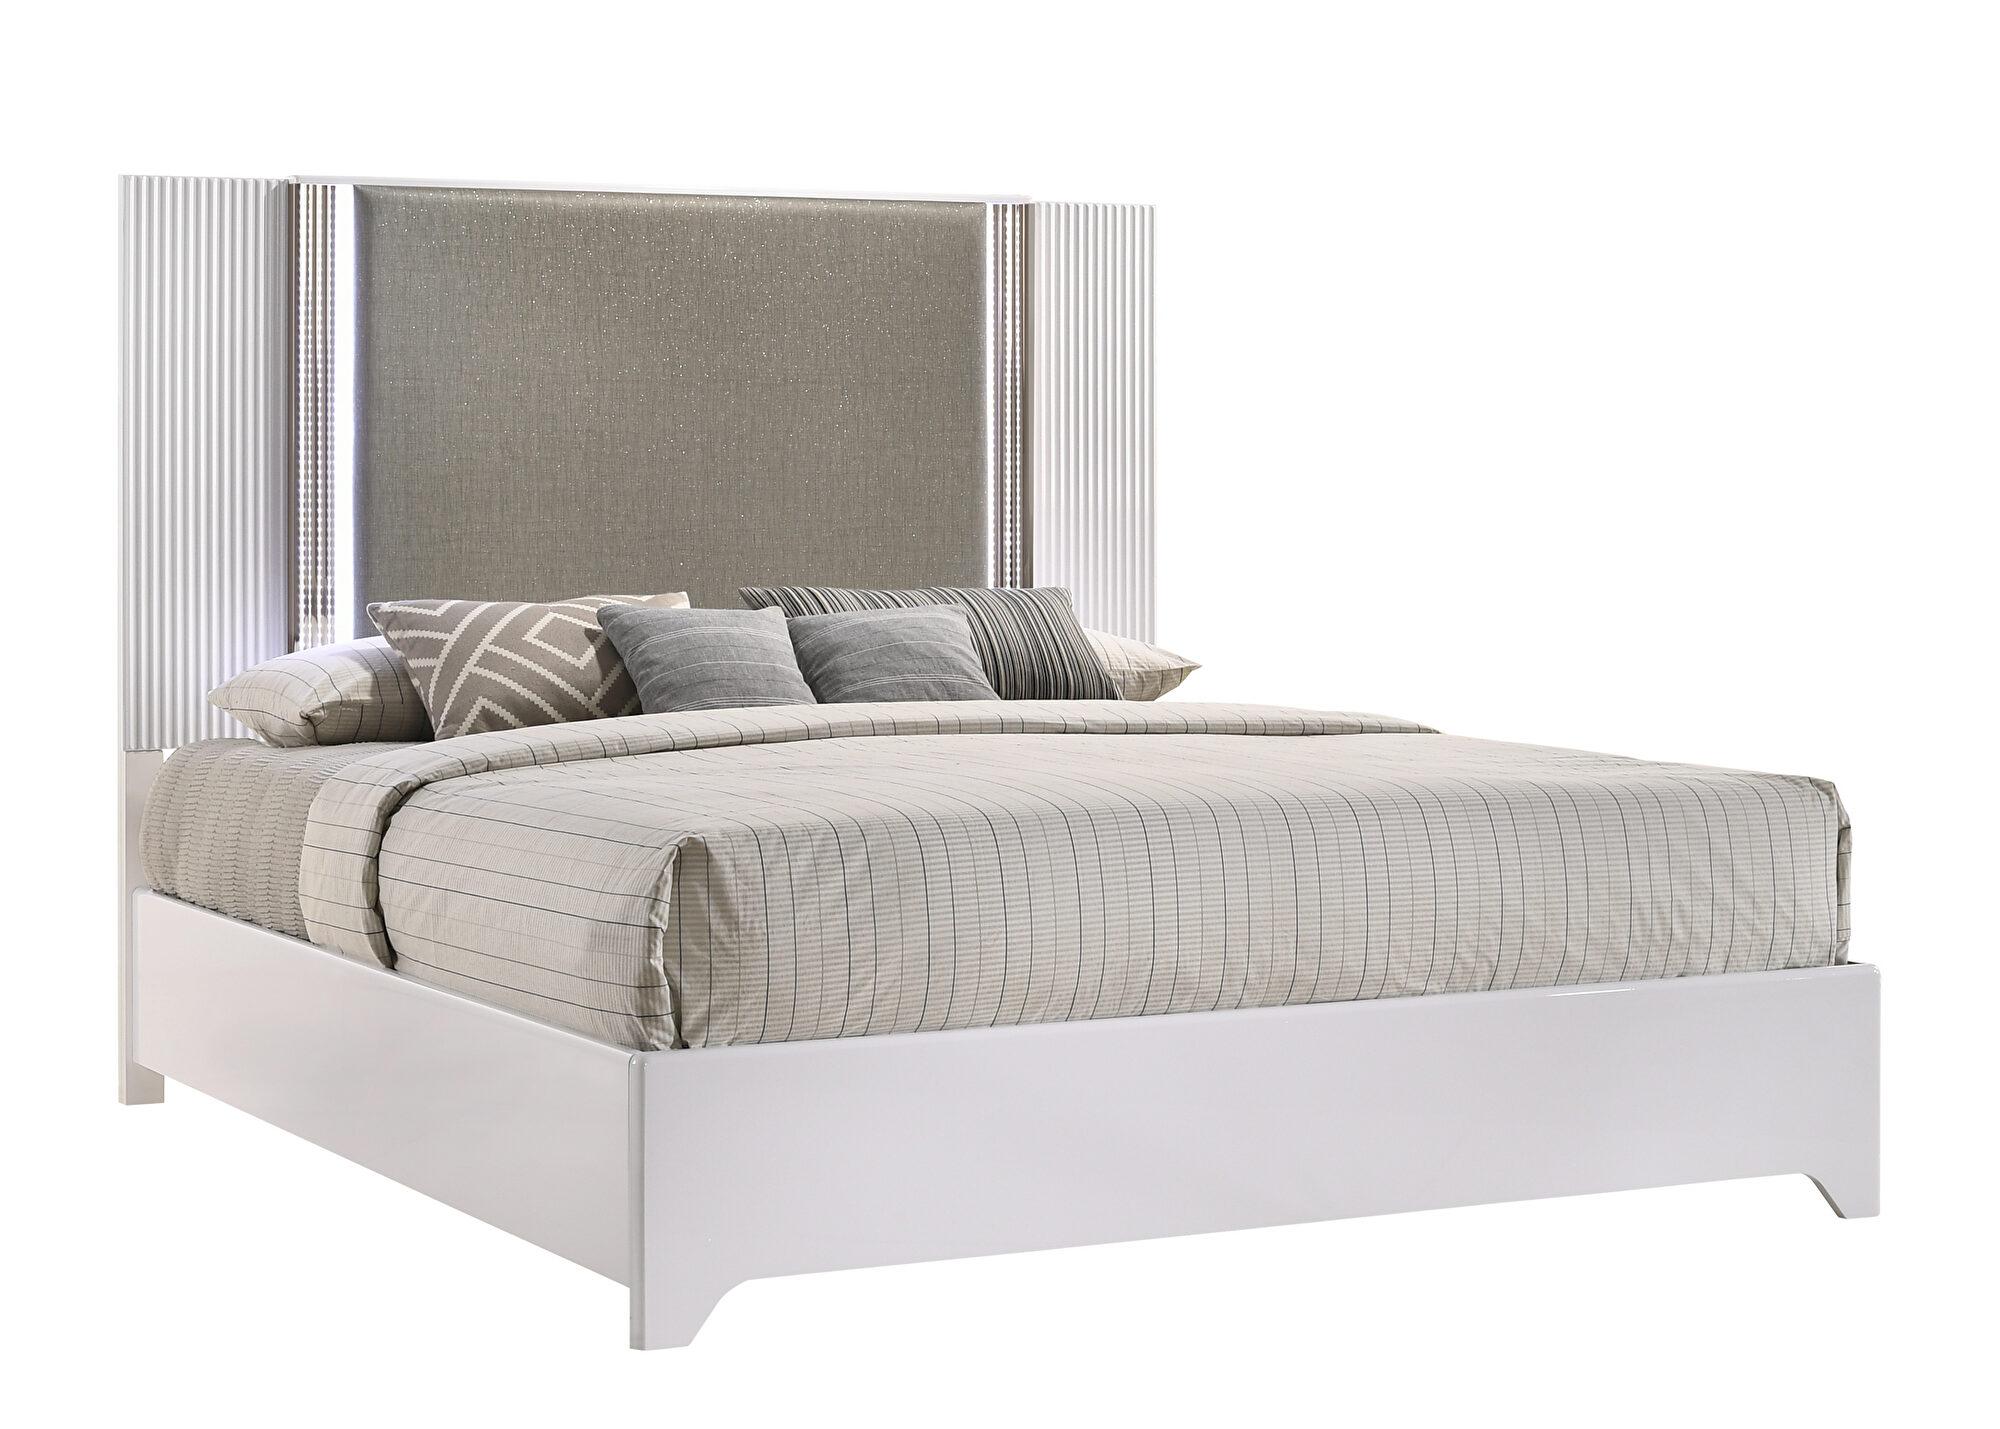 Global Furniture USA ASPEN Platform Bed